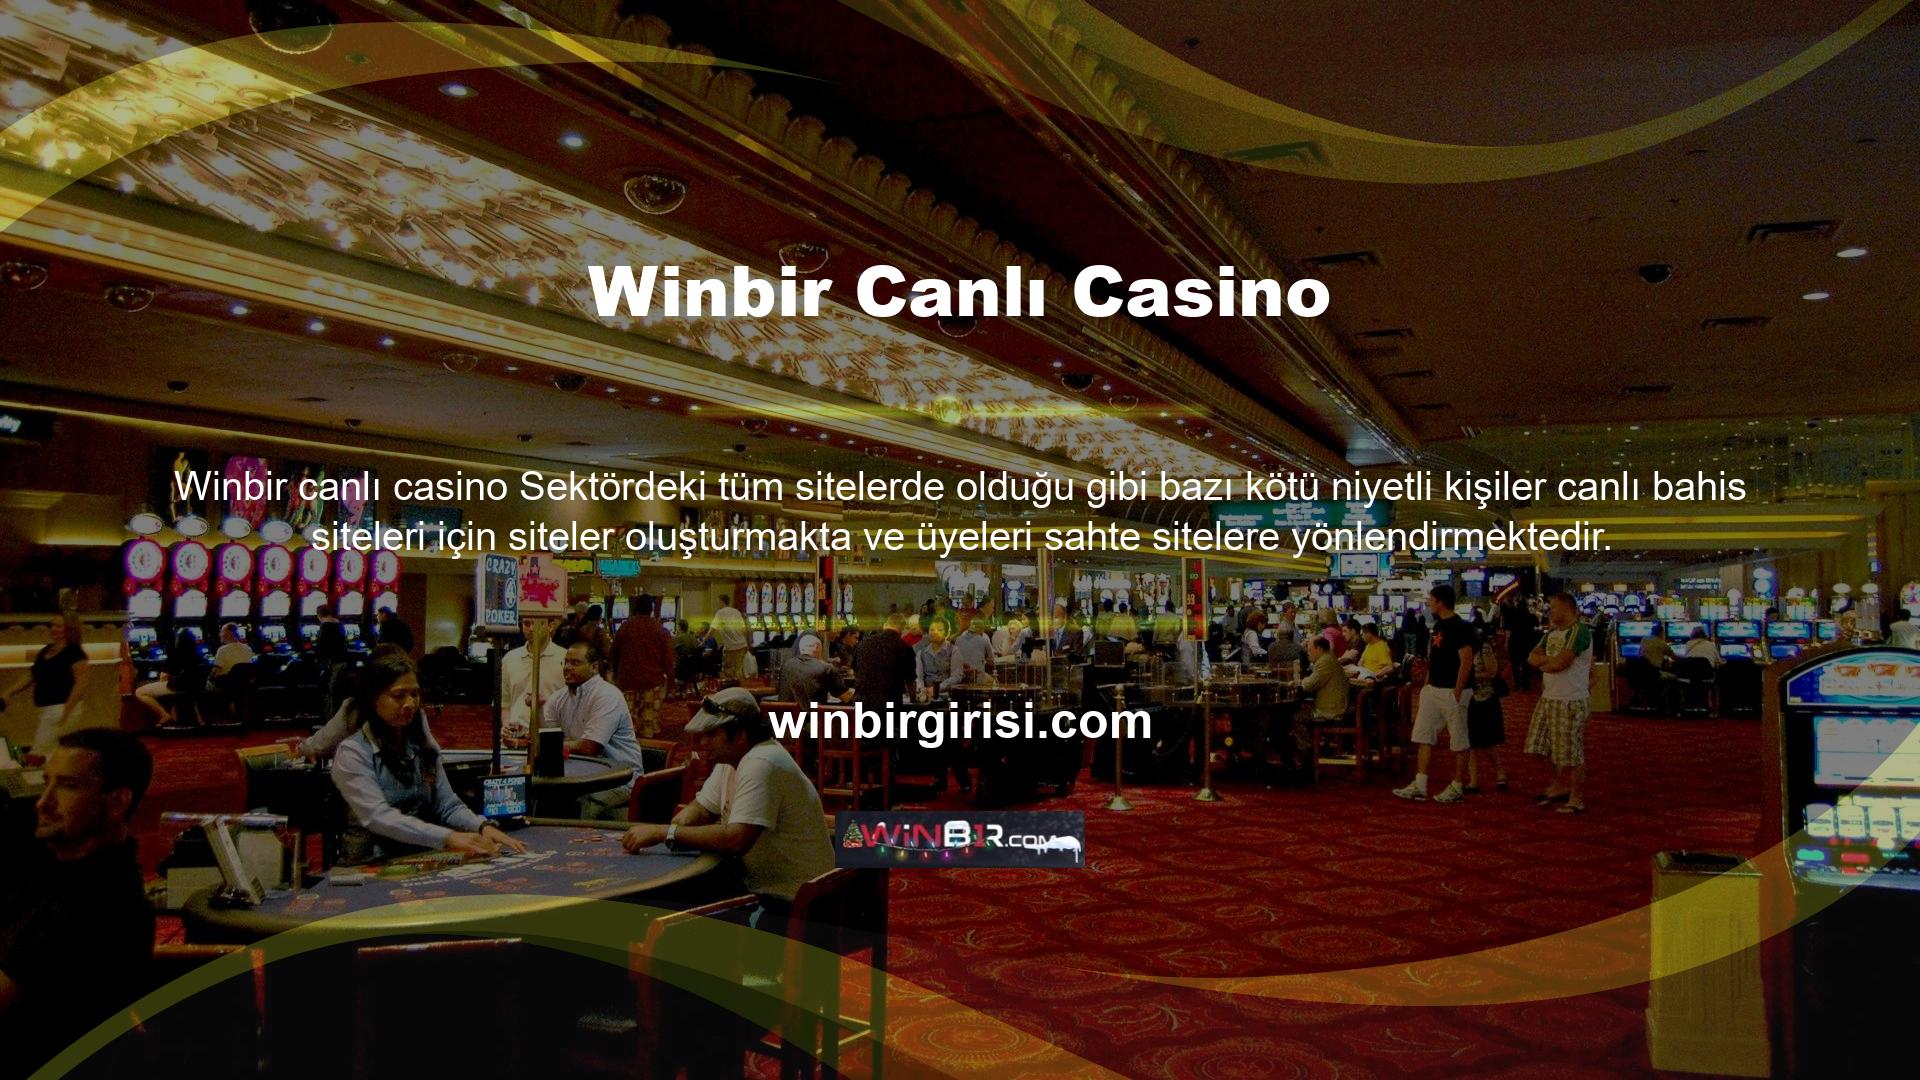 Winbir canlı casino